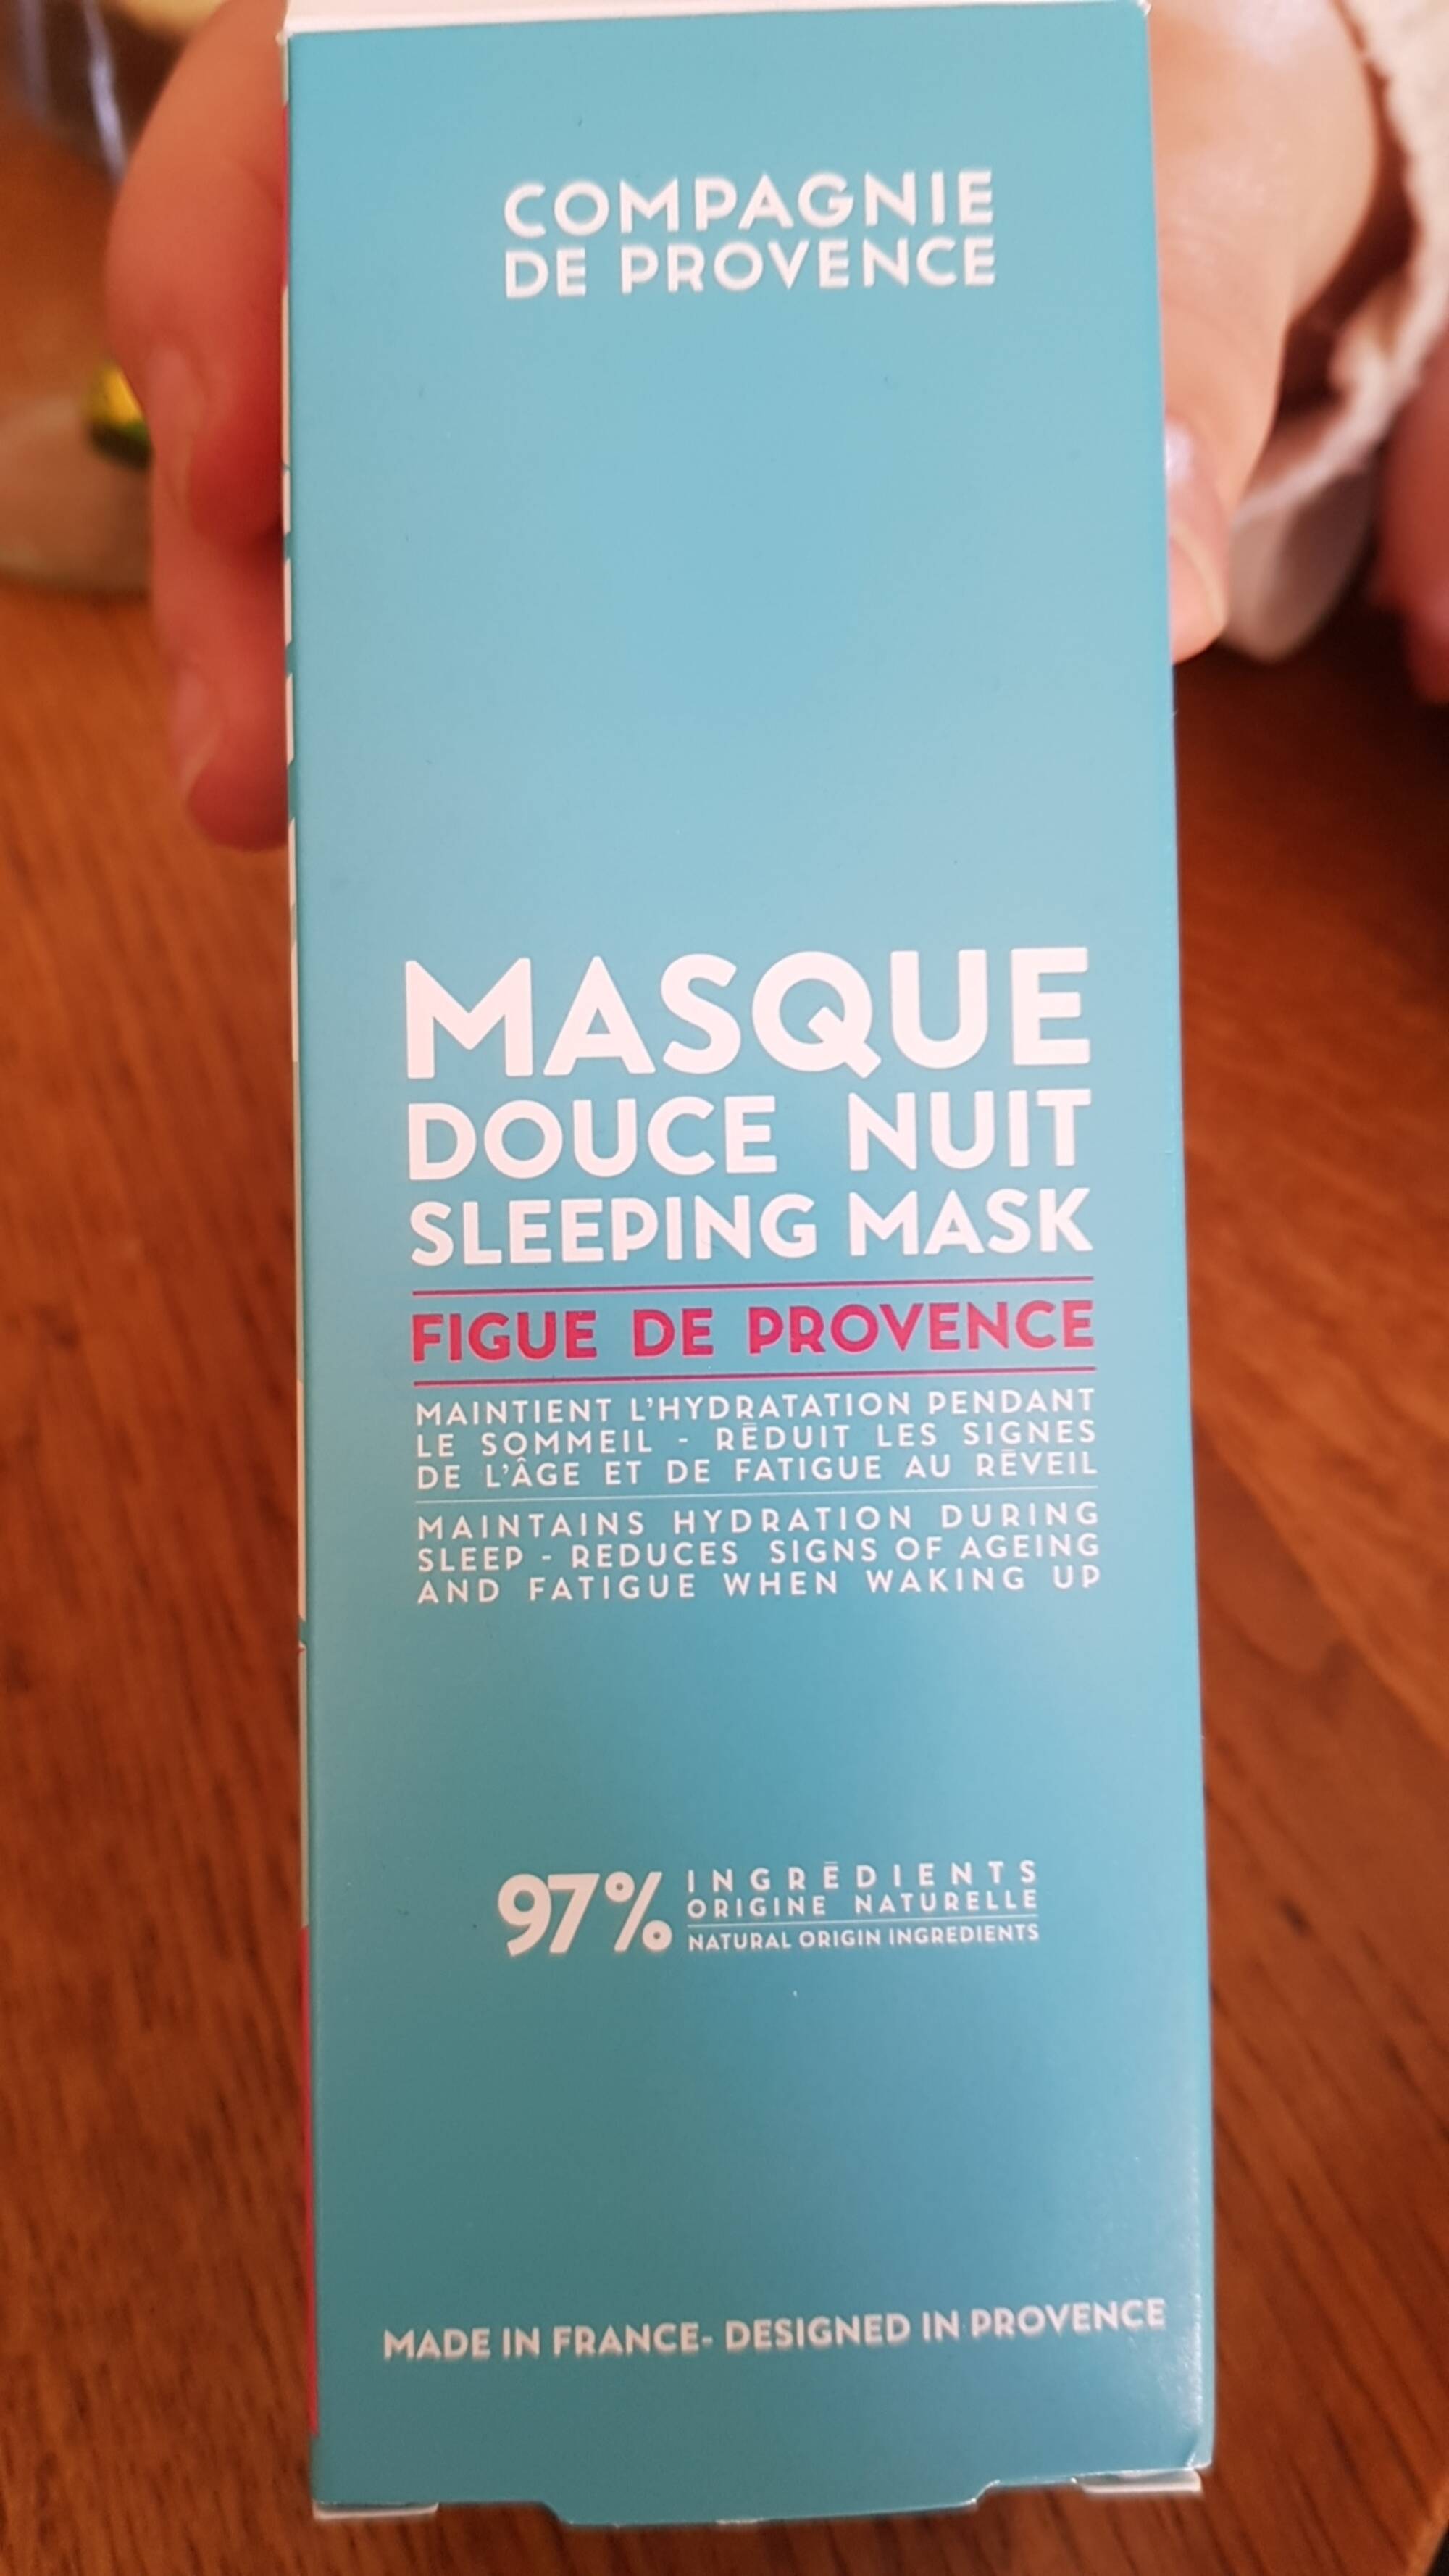 COMPAGNIE DE PROVENCE - Figue de Provence - Masque douce nuit